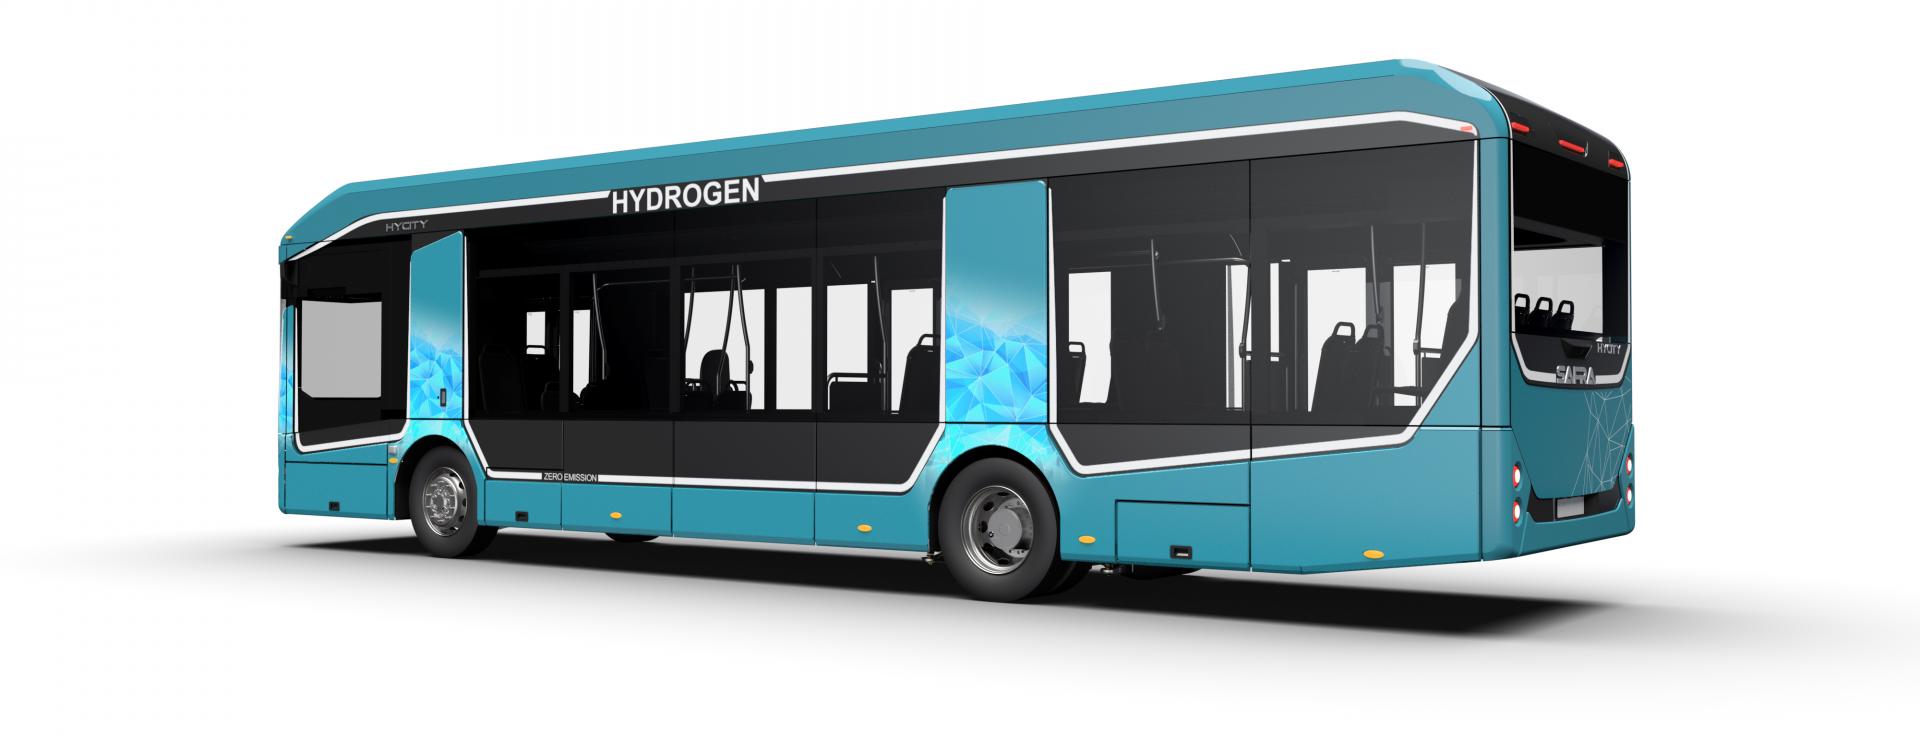 Le dernier bus à hydrogène développé par Safra. Crédit : Safra. 